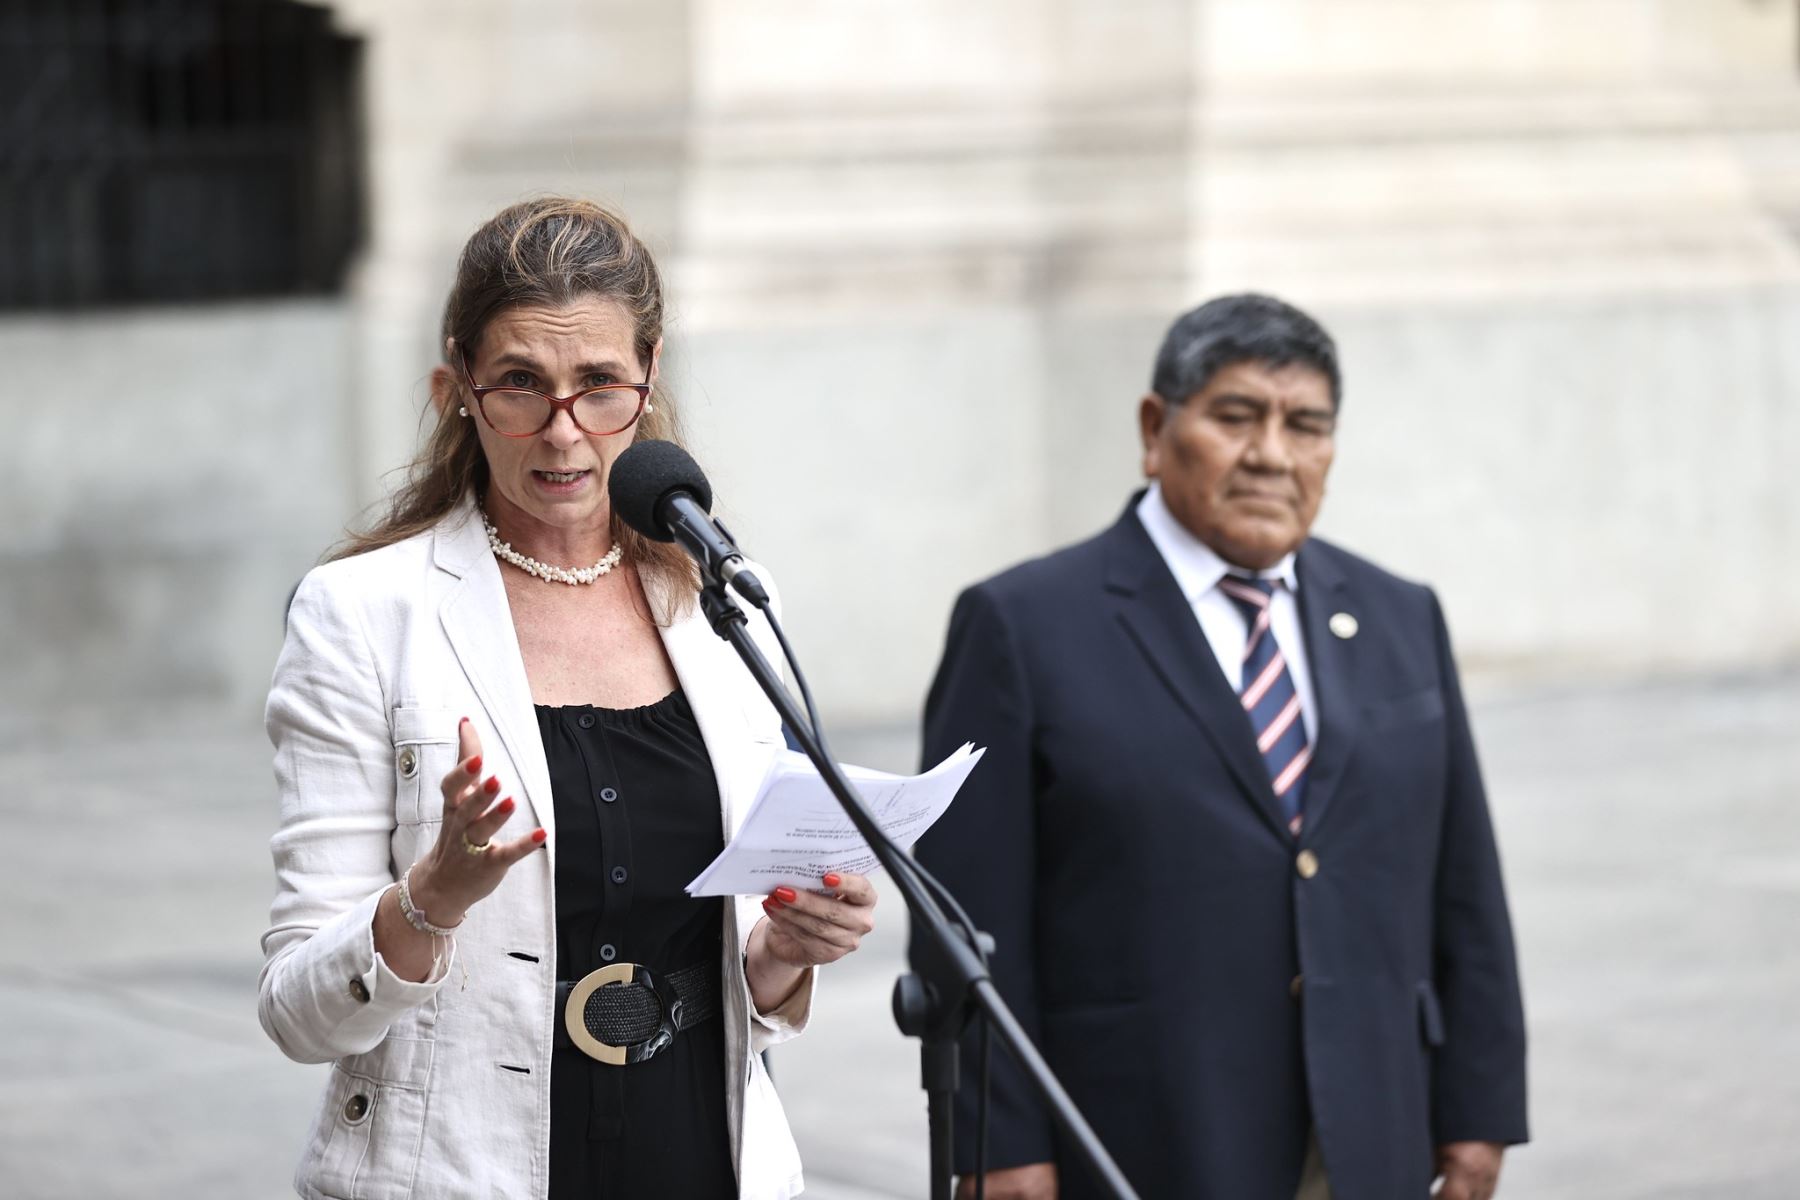 La ministra de Vivienda, Hania Pérez de Cuéllar, participó en conferencia de prensa. Foto: PCM